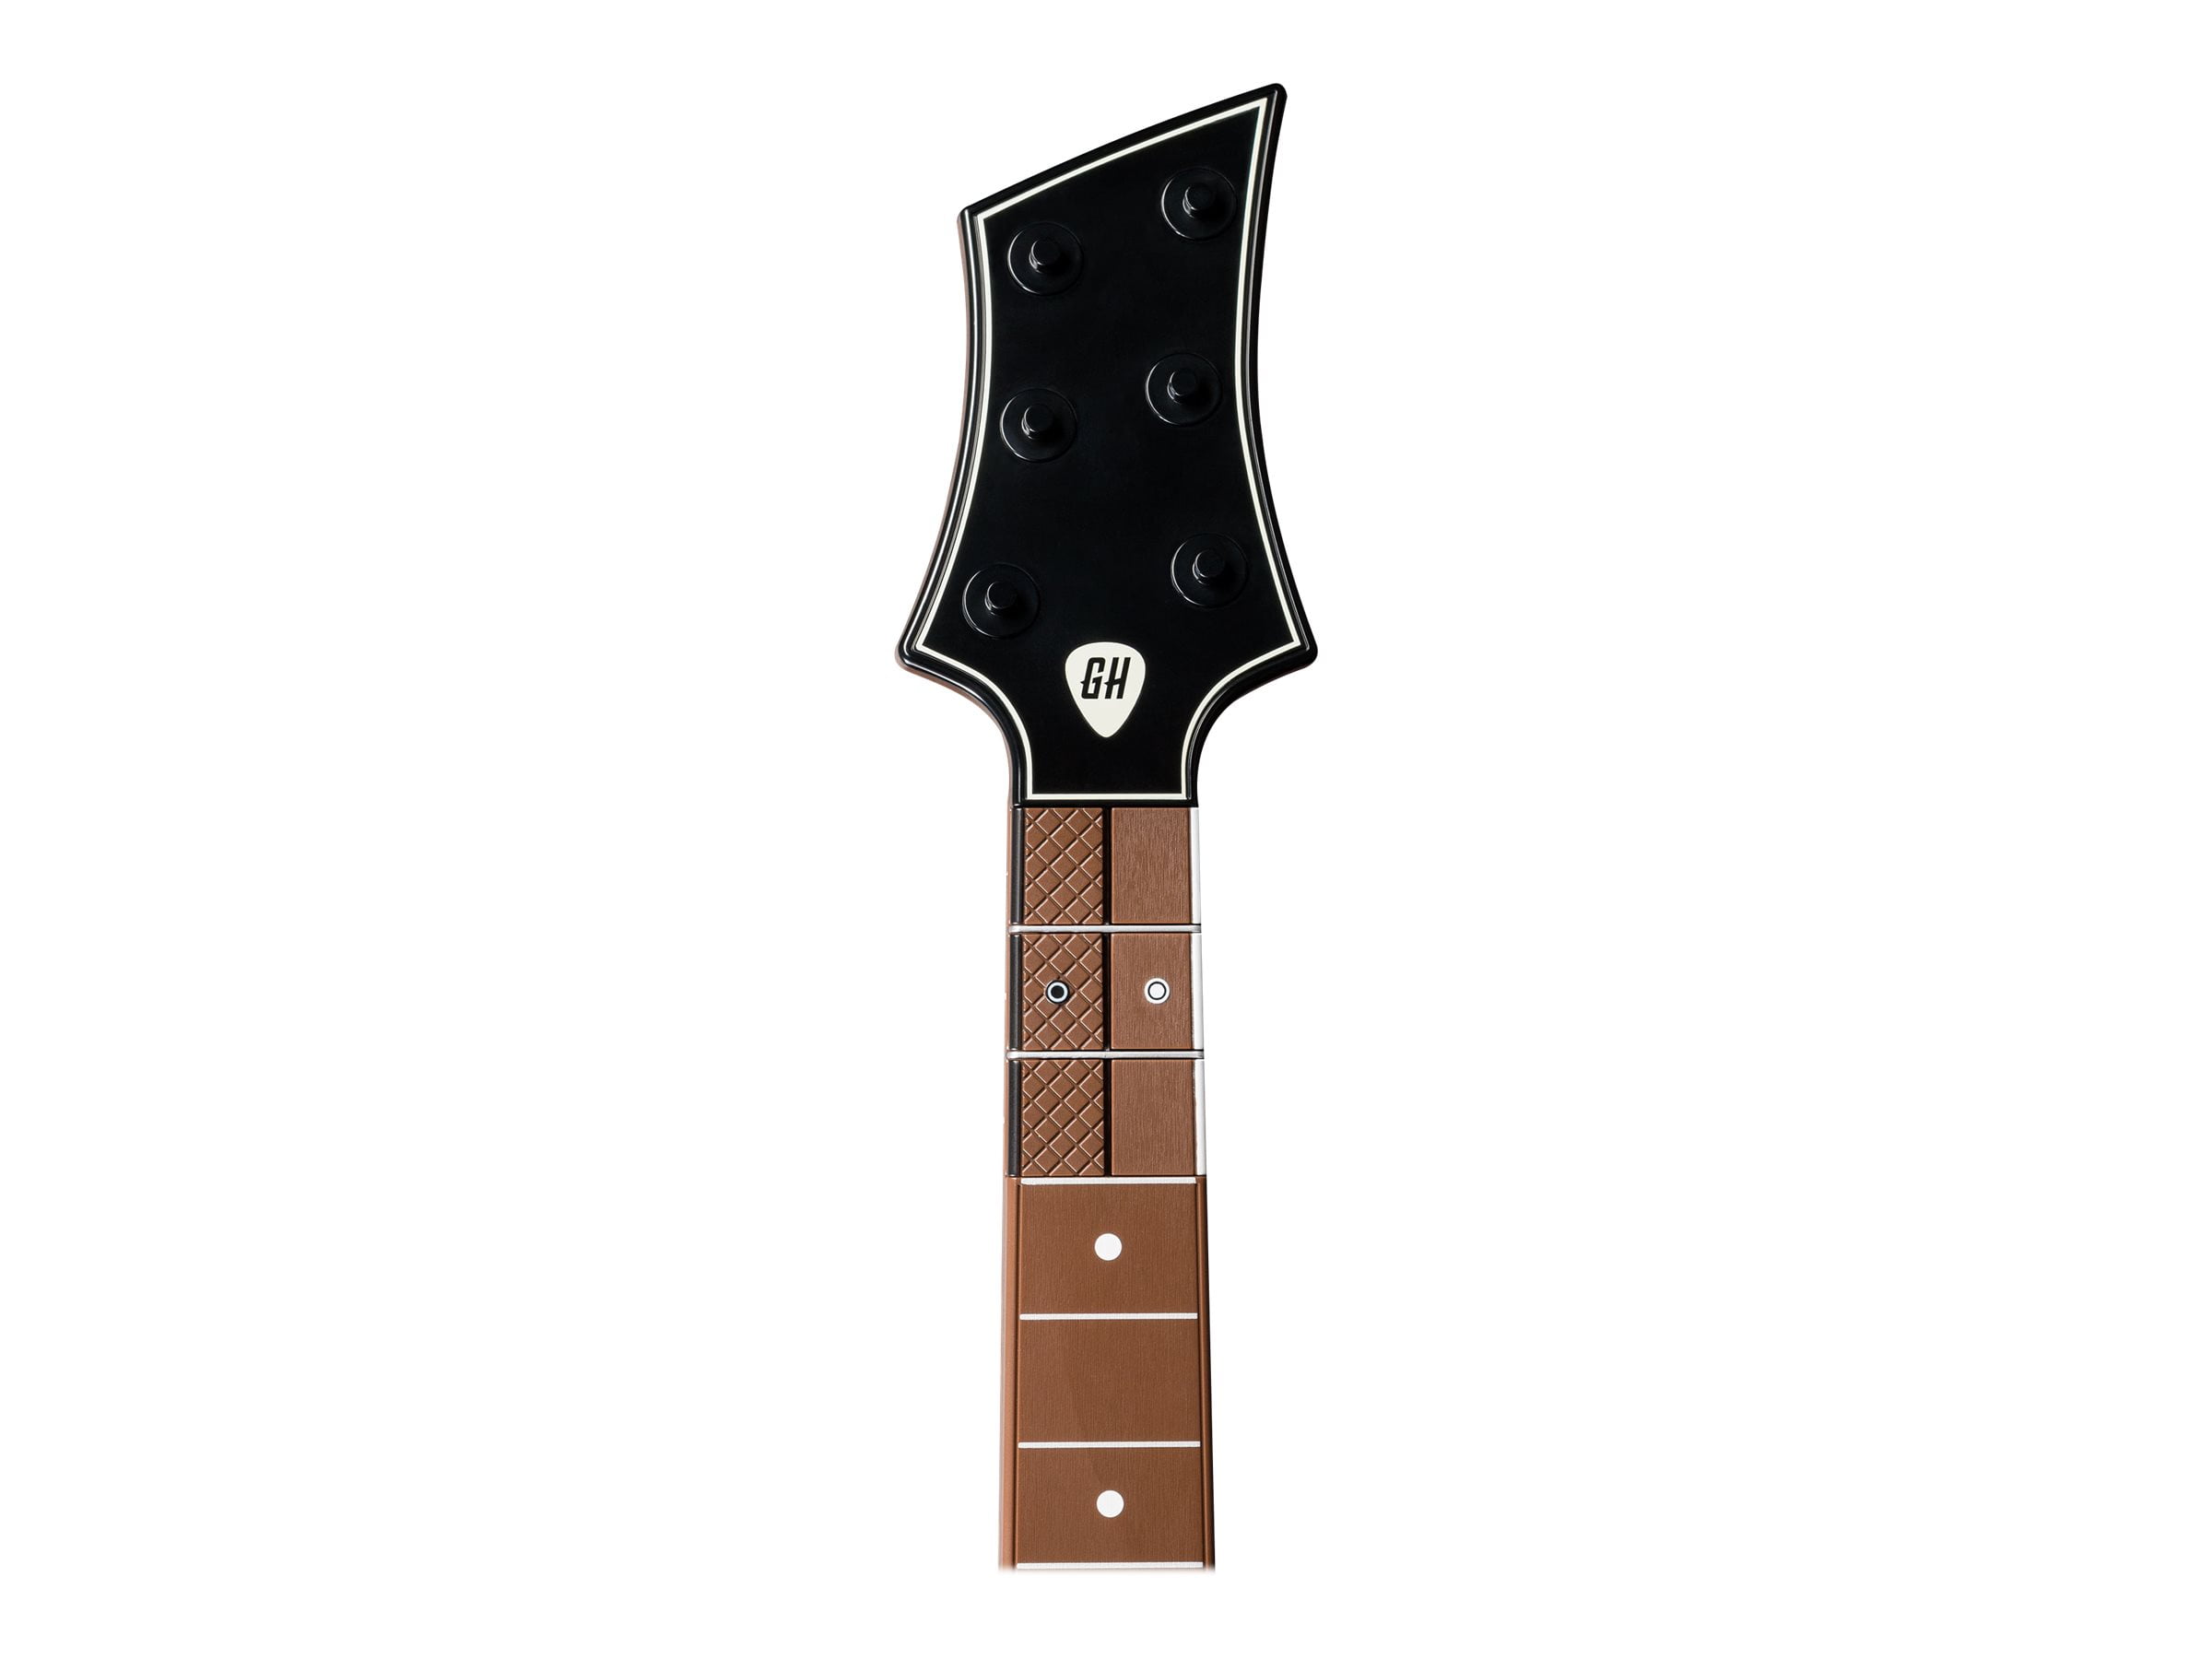 Review: Guitar Hero Controller Roundup - Premier Guitar